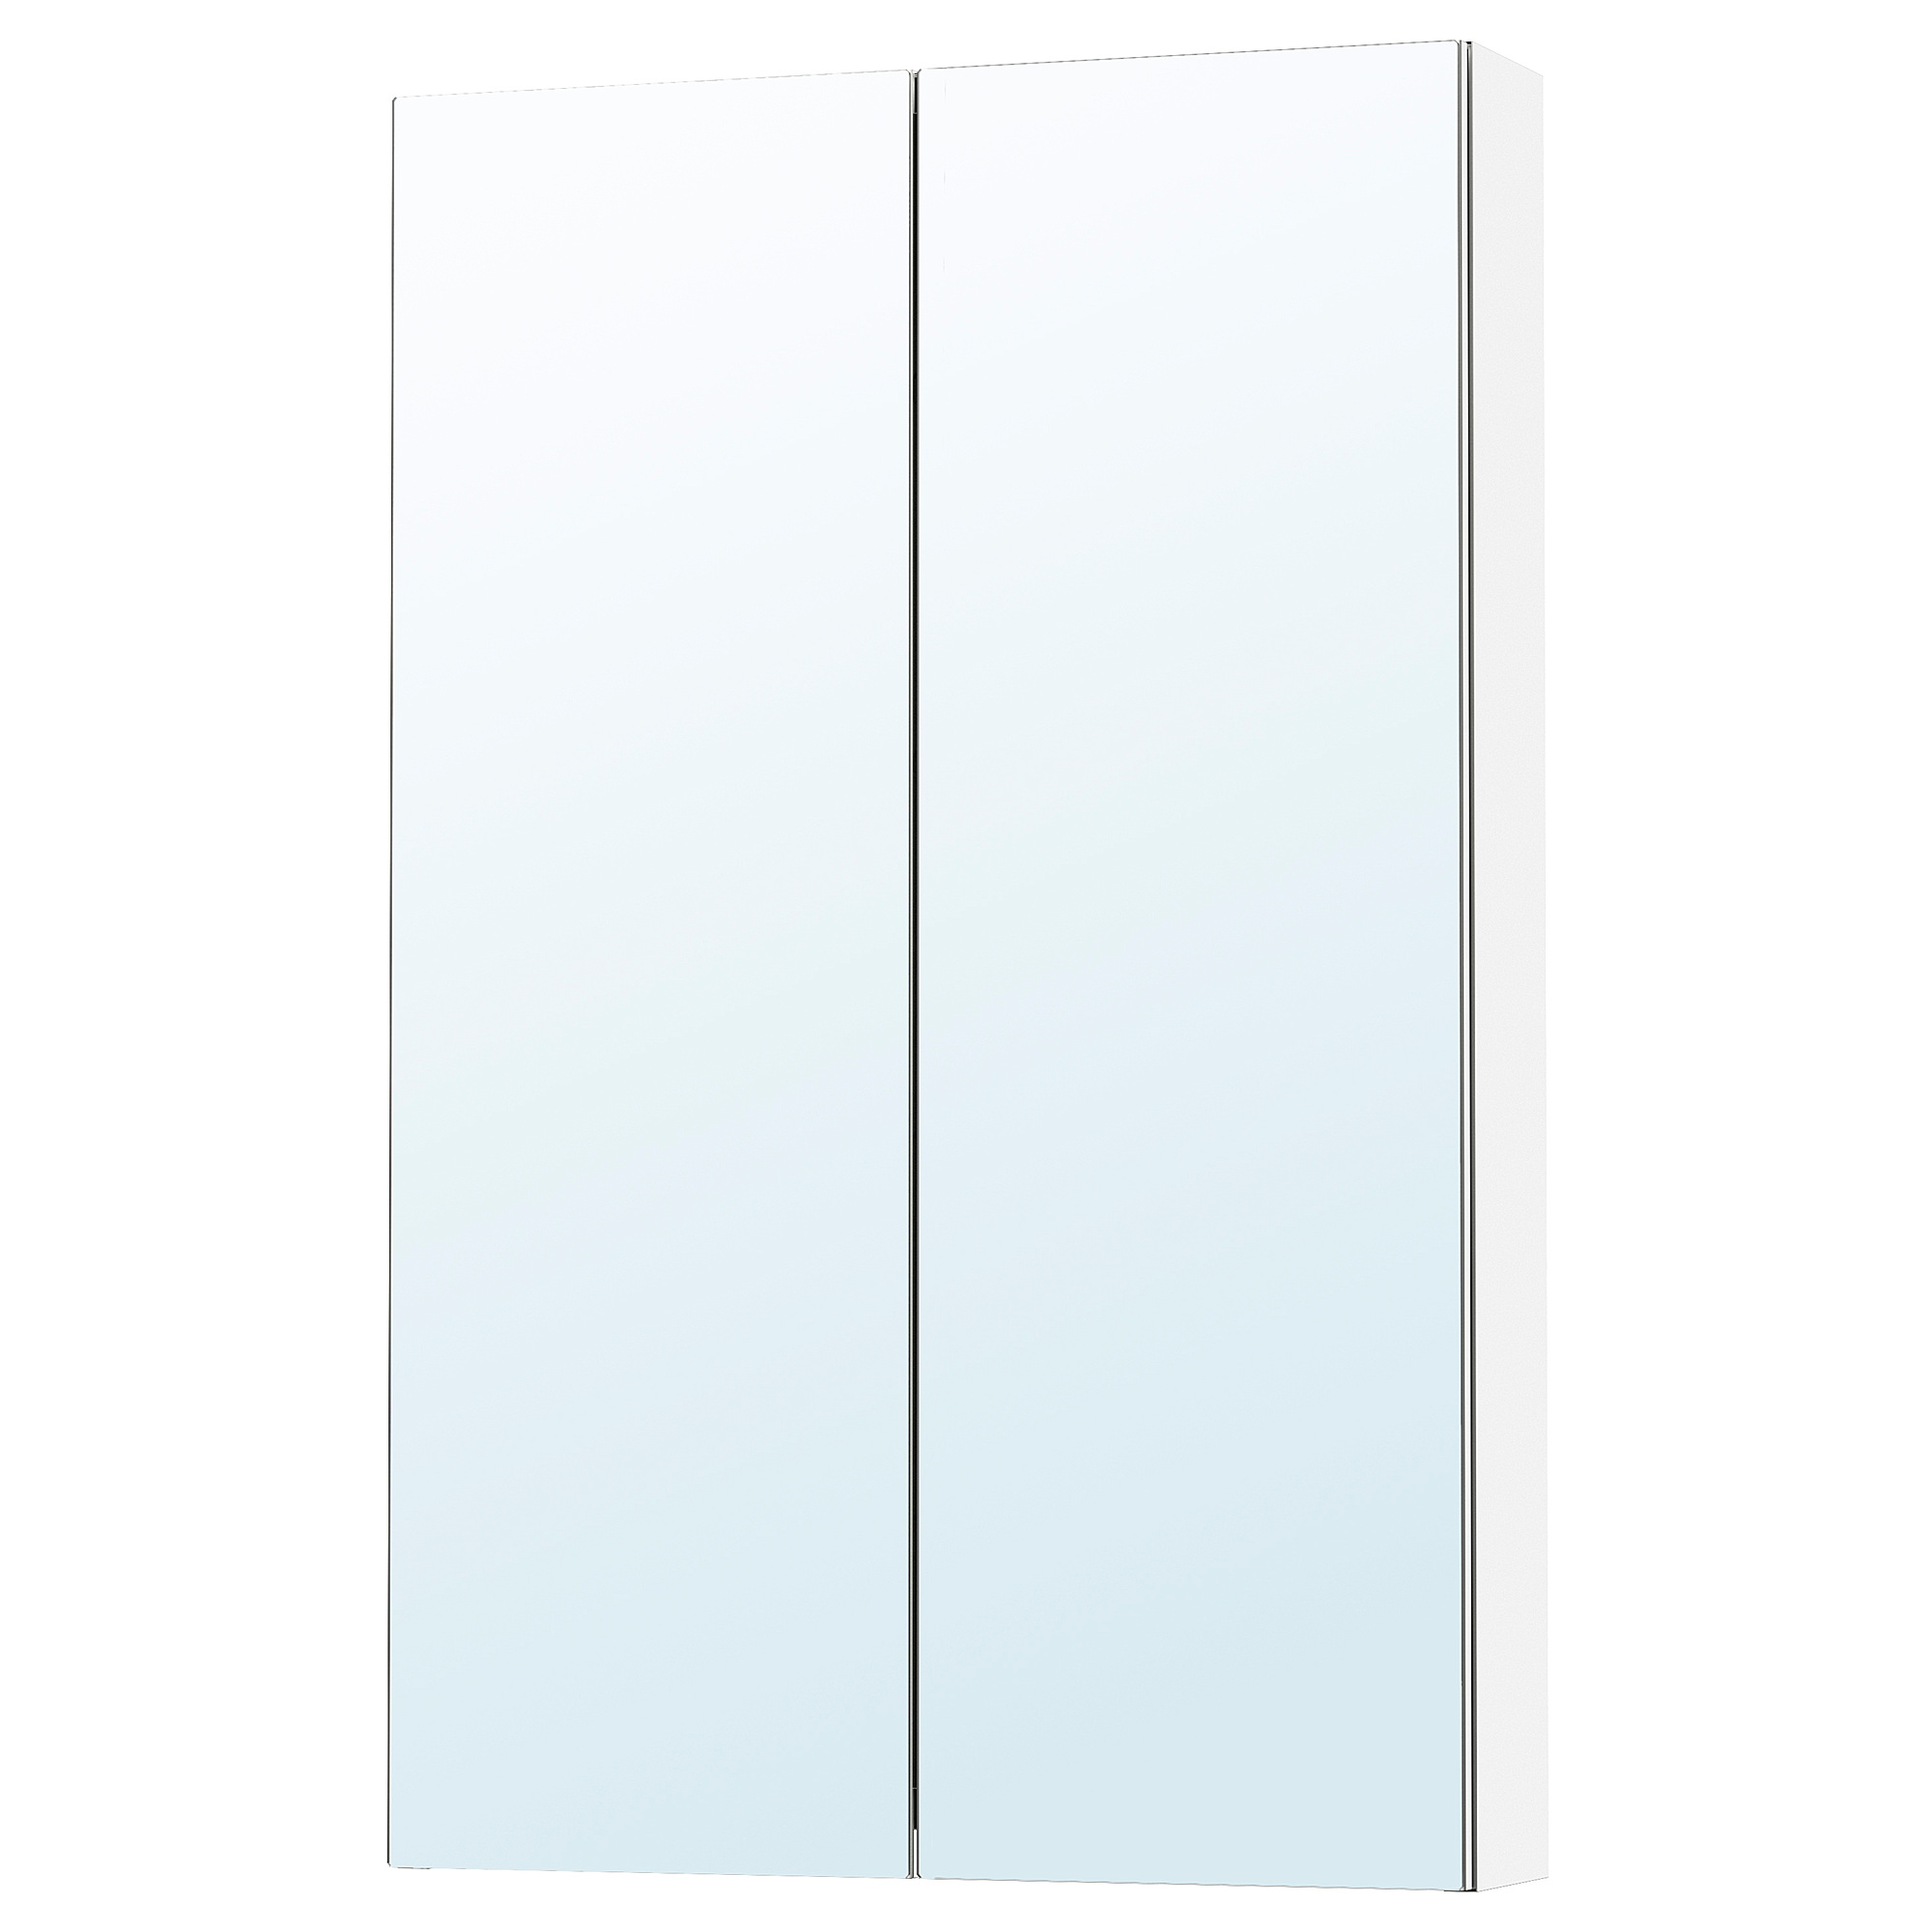 LETTAN mirror cabinet with doors